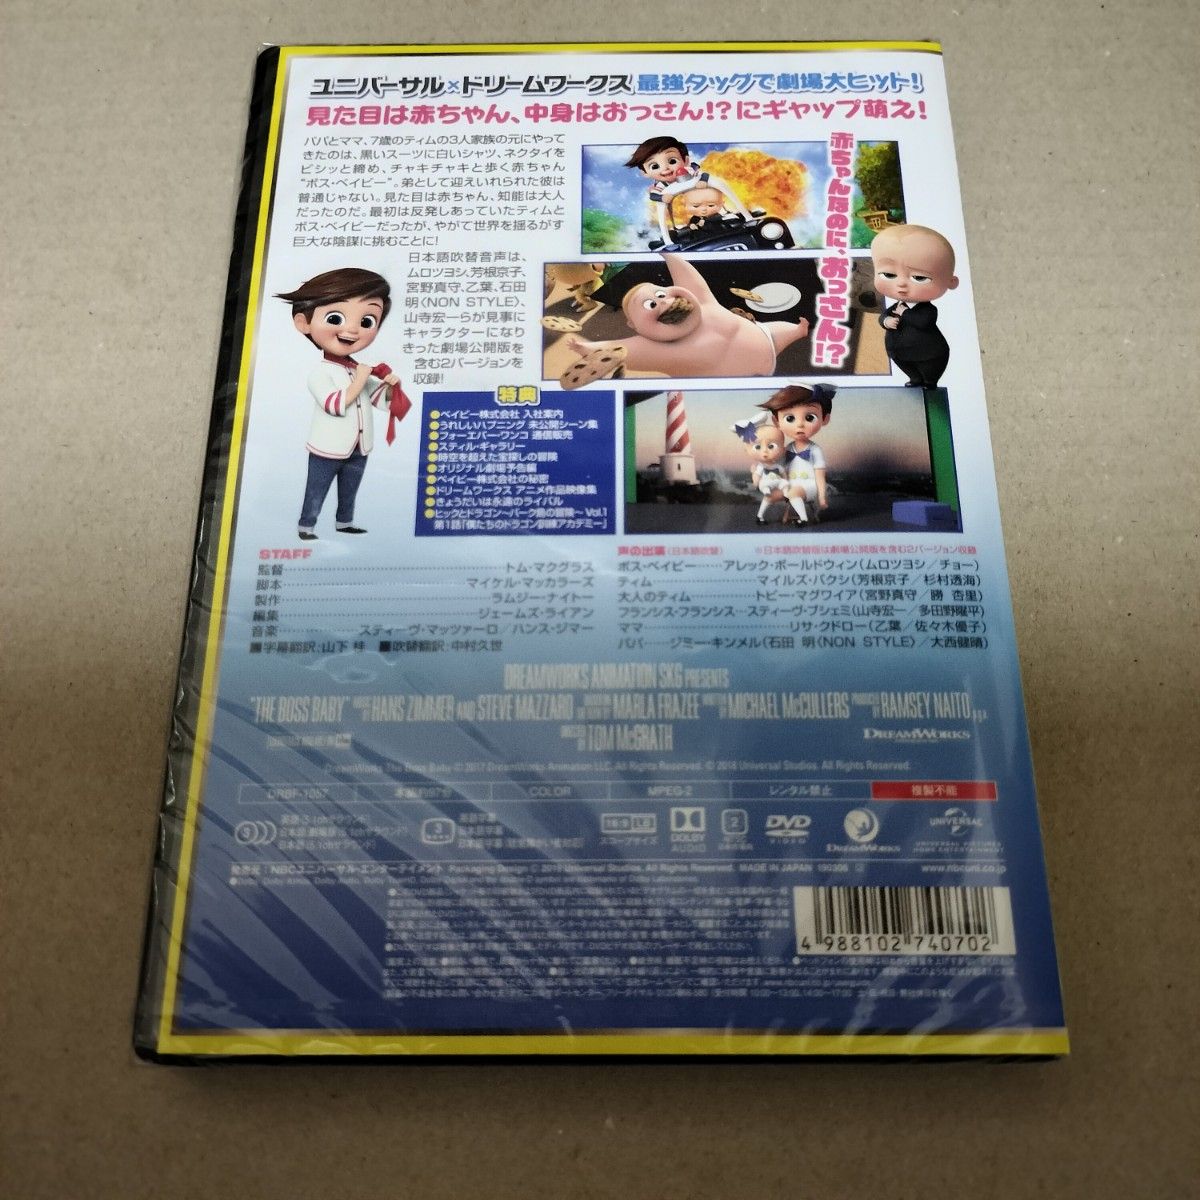 ボスベイビー + ファミリーミッション DVD 2部作セット 海外アニメ 劇場版 セル版 新品 未開封